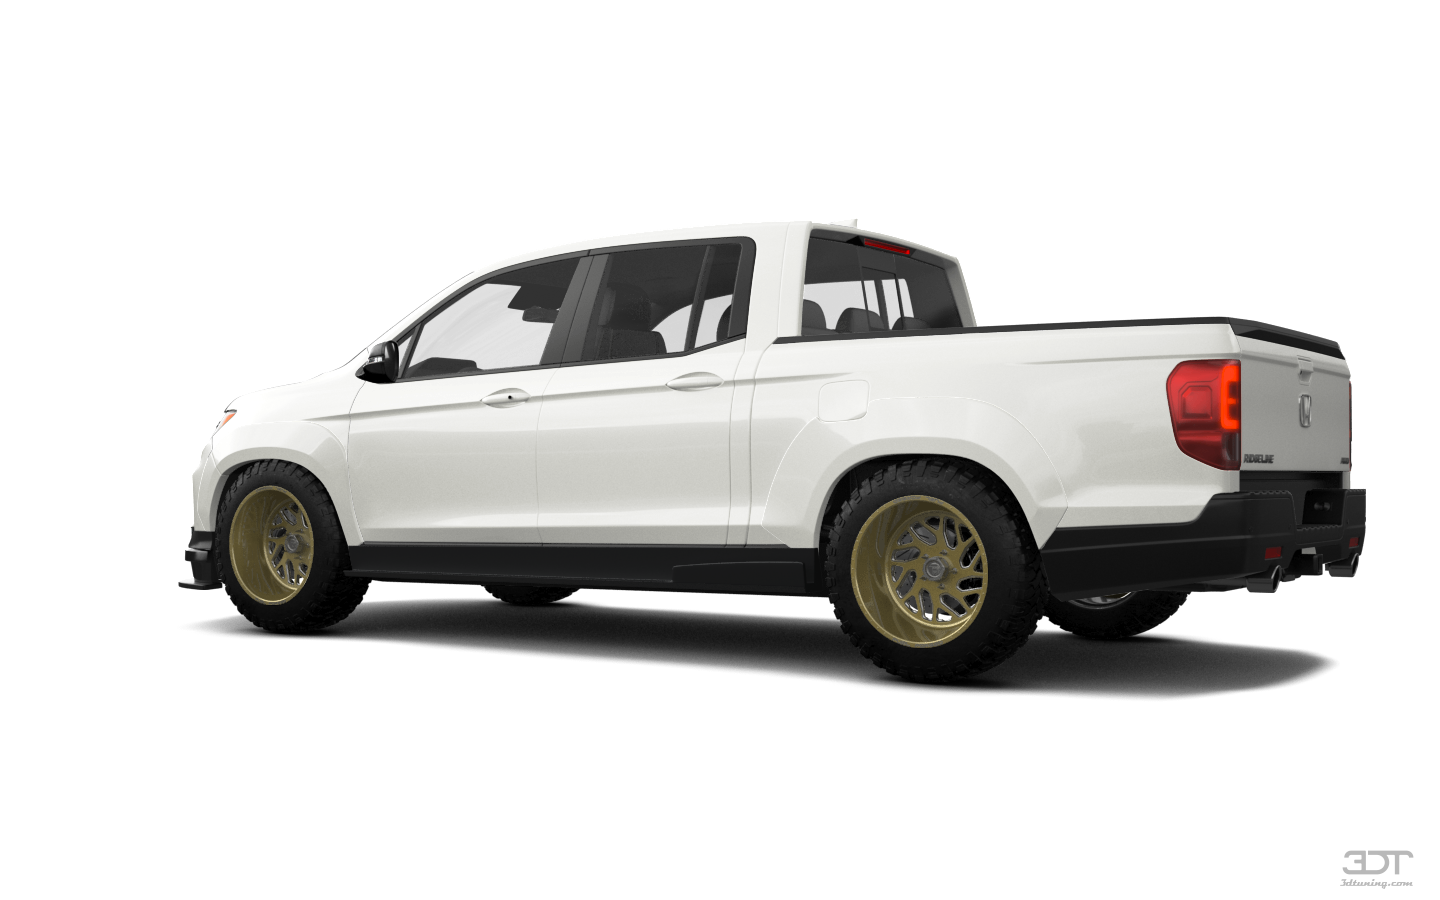 Honda Ridgeline 4 Door pickup truck 2021